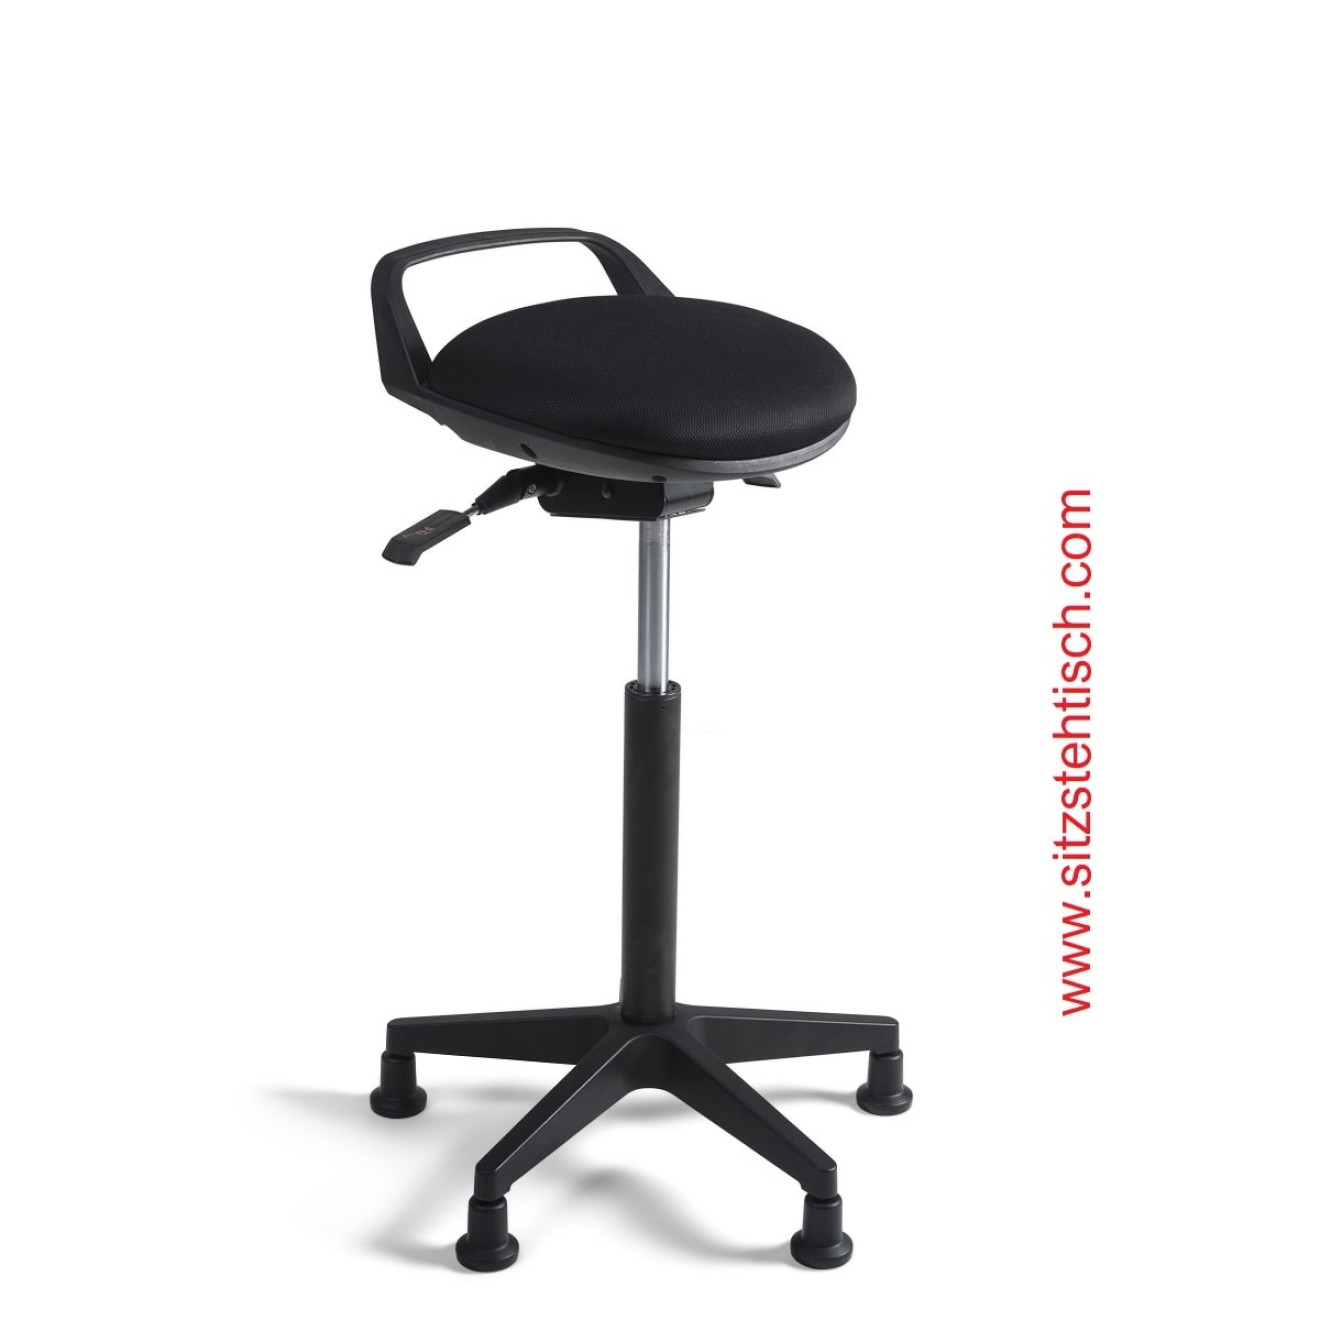 Stehhilfe Sitzhöhe- und Sitzwinkel verstellbar - Sitzfläche Stoff Schwarz - Fußkreuz Kunststoff mit Gleiter - 5 Jahre Garantie - 103966